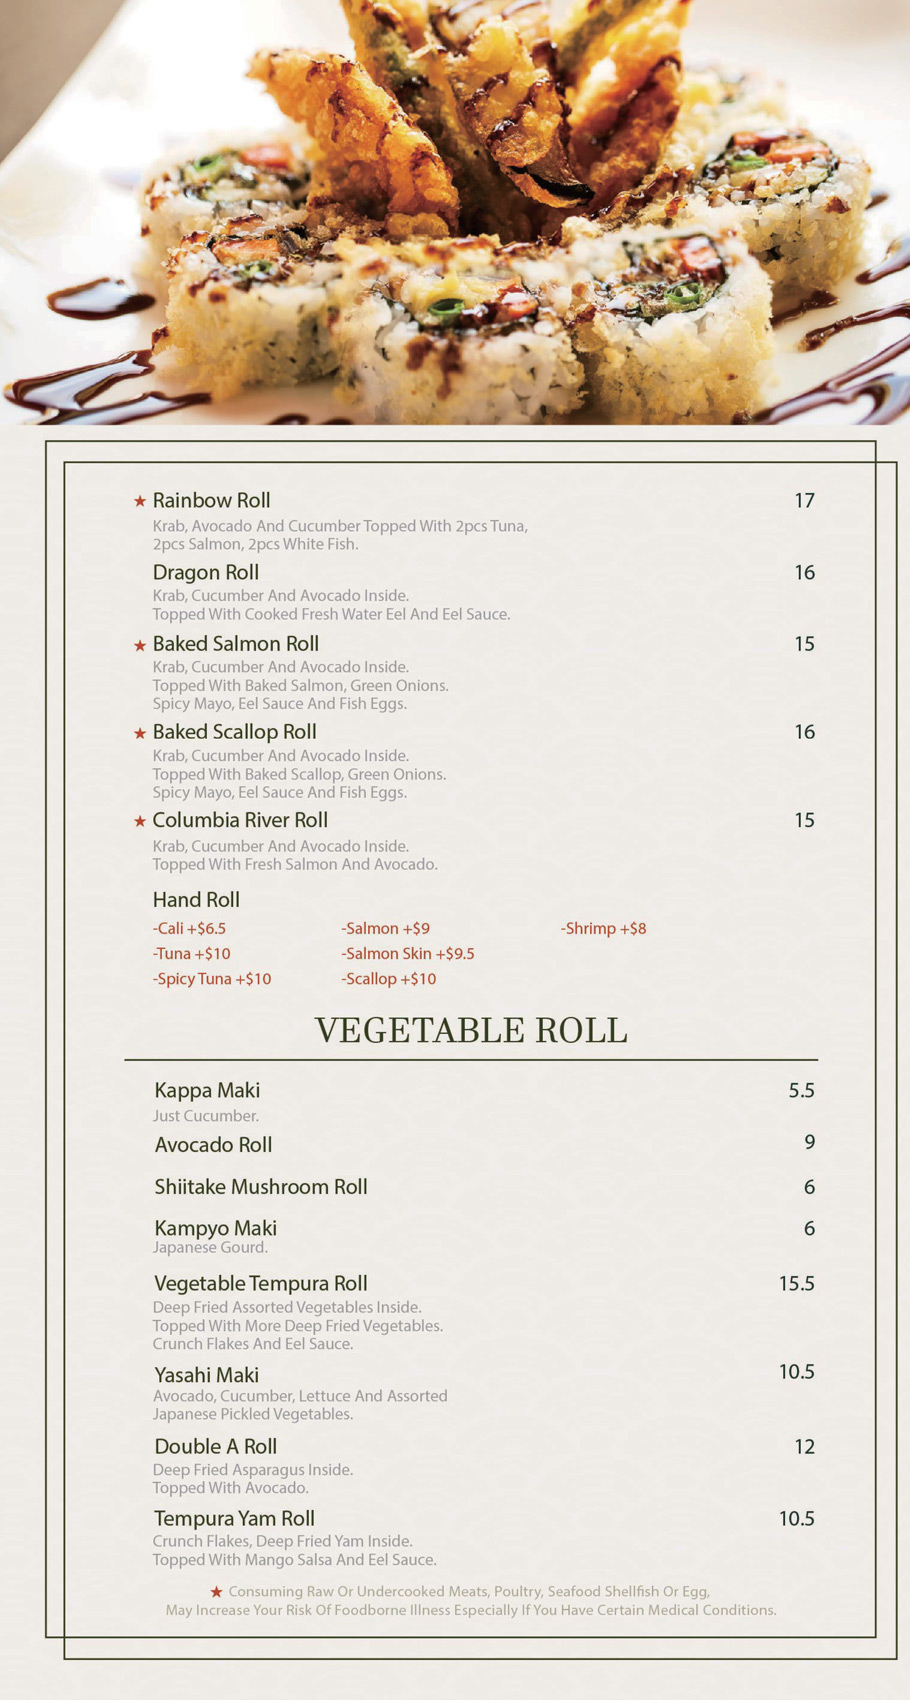 aji-sushi-newcastle-menu_0120_05